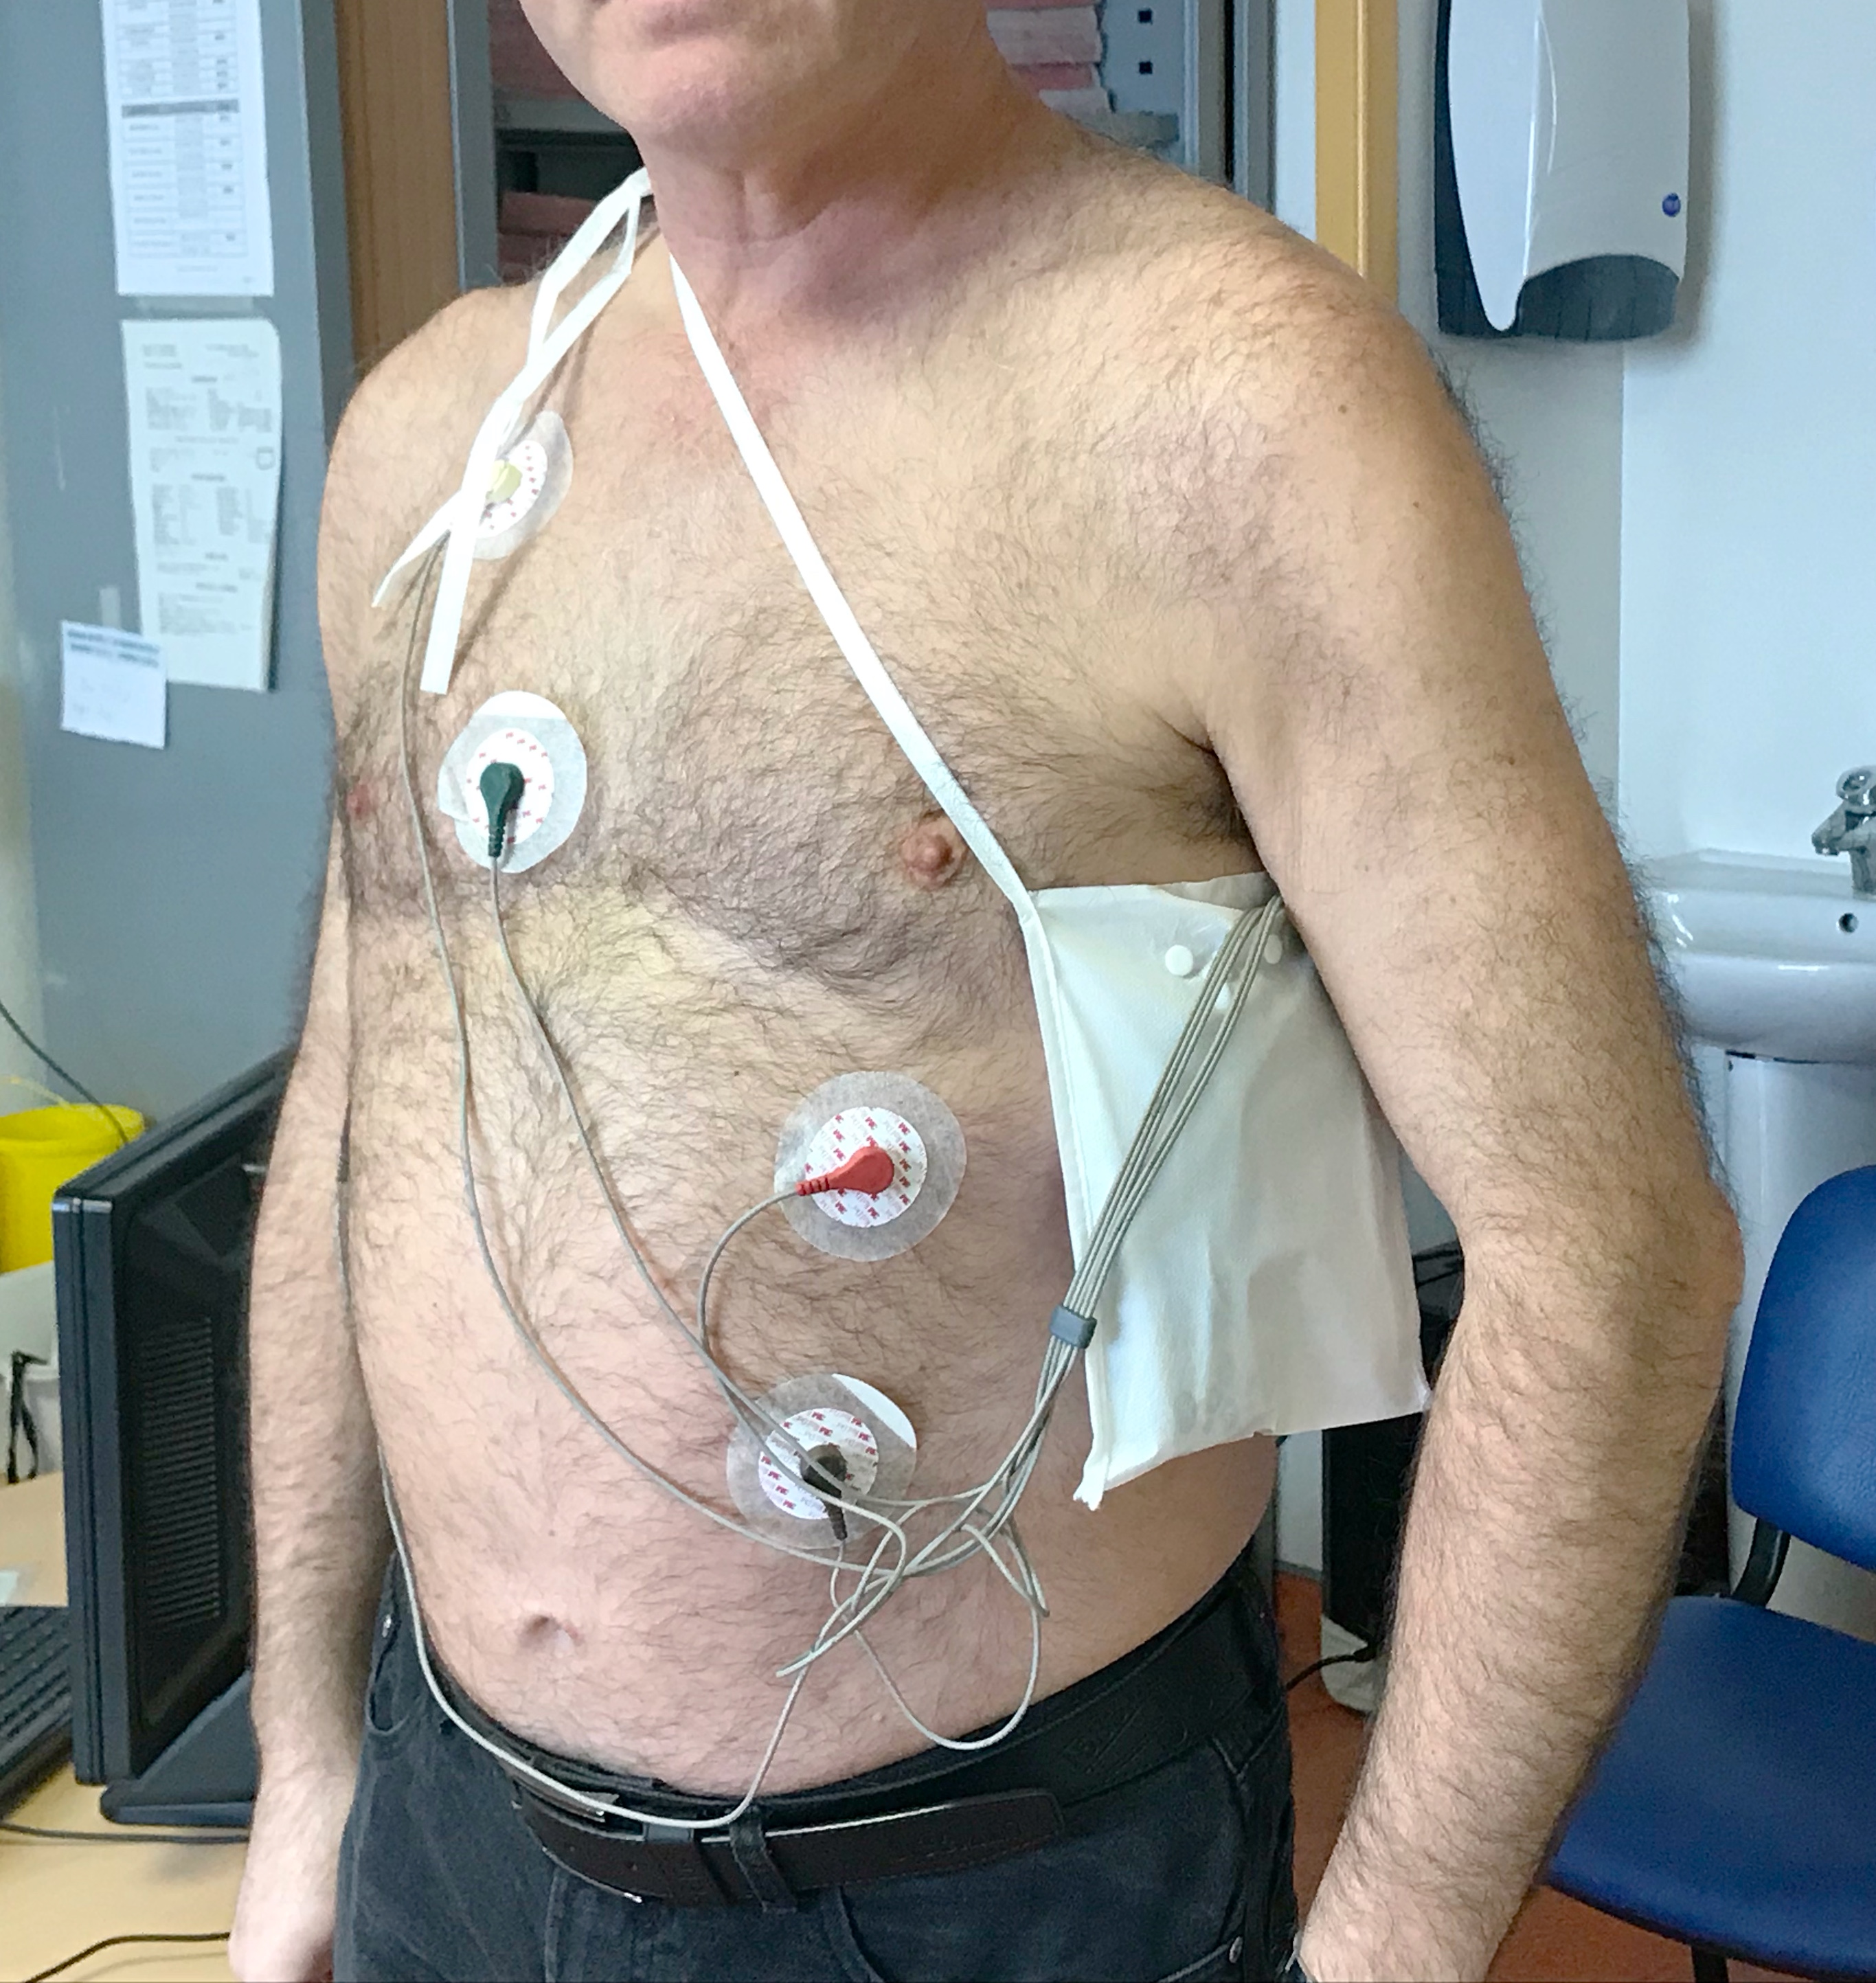 Le holter ECG - Cardiologie du CHI de Montreuil -93